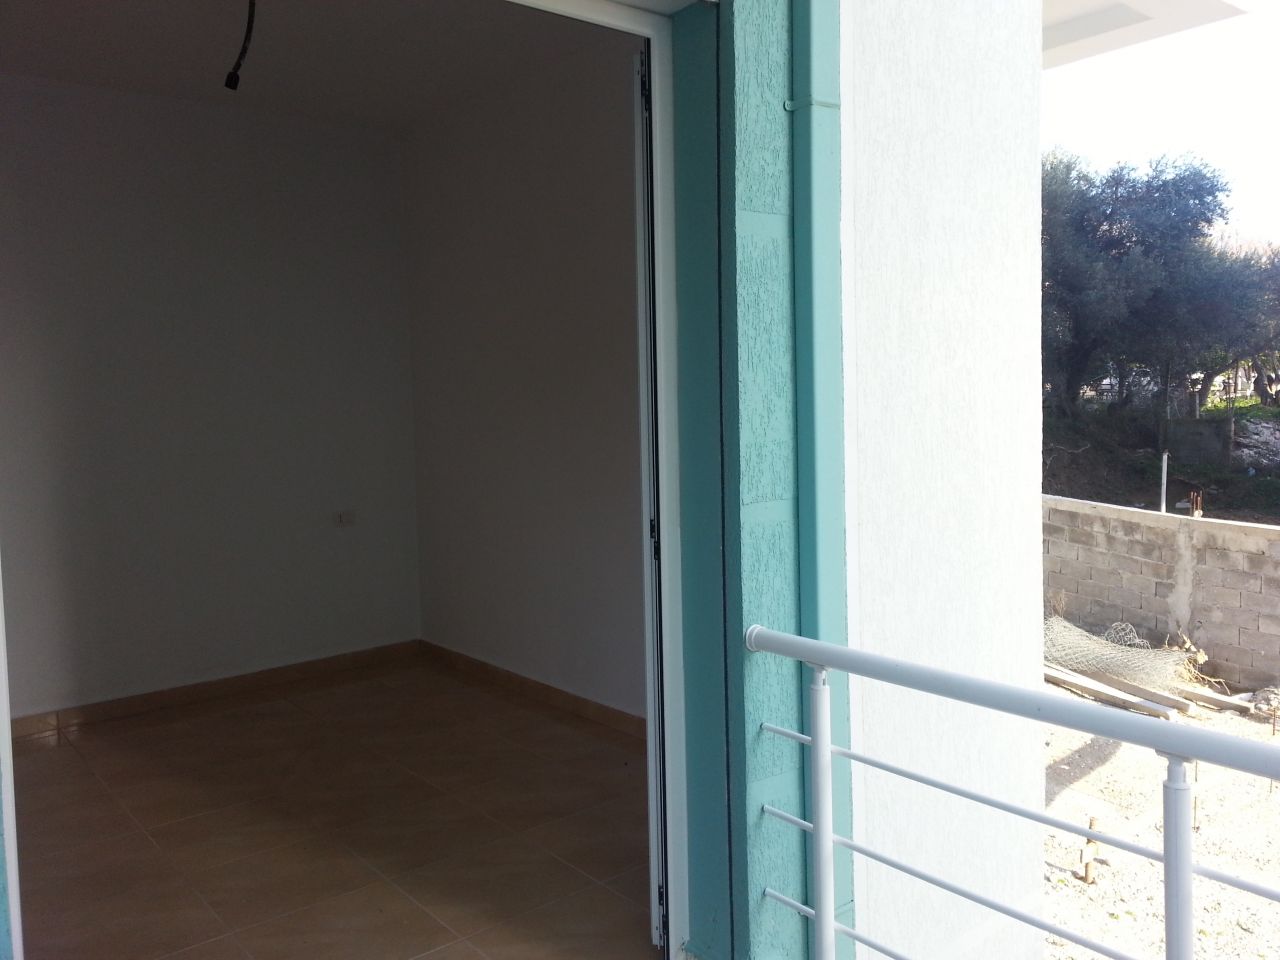 real estate cmimi - 37 000 EURO apartament per shitje ne radhima, vlore - 60 m2